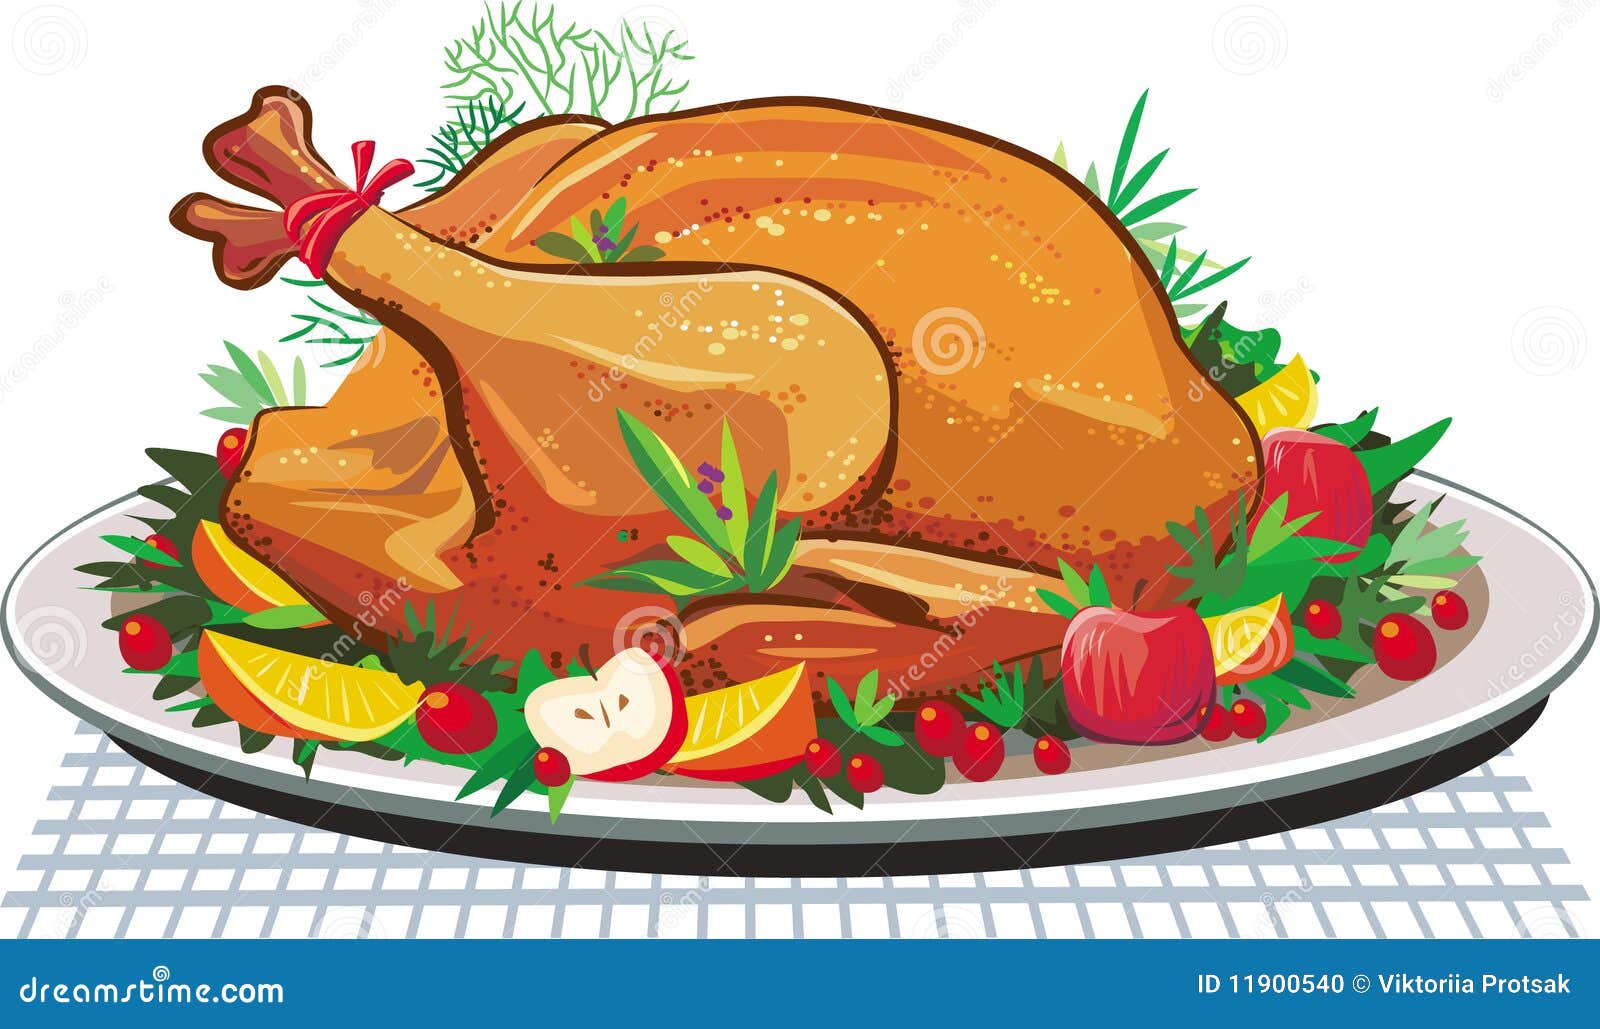 roast turkey on the plate